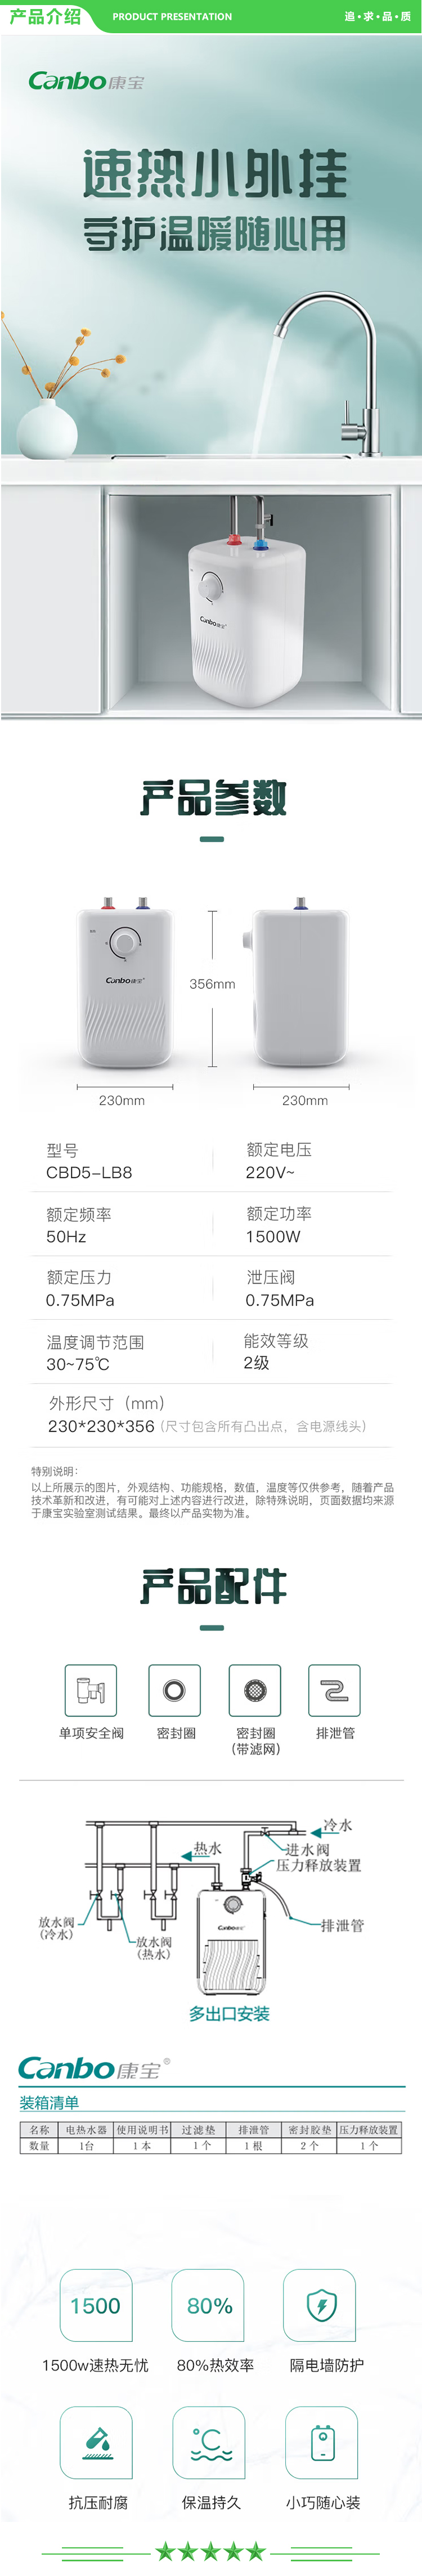 康宝 Canbo CBD5-LB8 5升迷你上出水电热水器小厨宝 蓝钻内胆安全防护 小尺寸1650W速热 .jpg